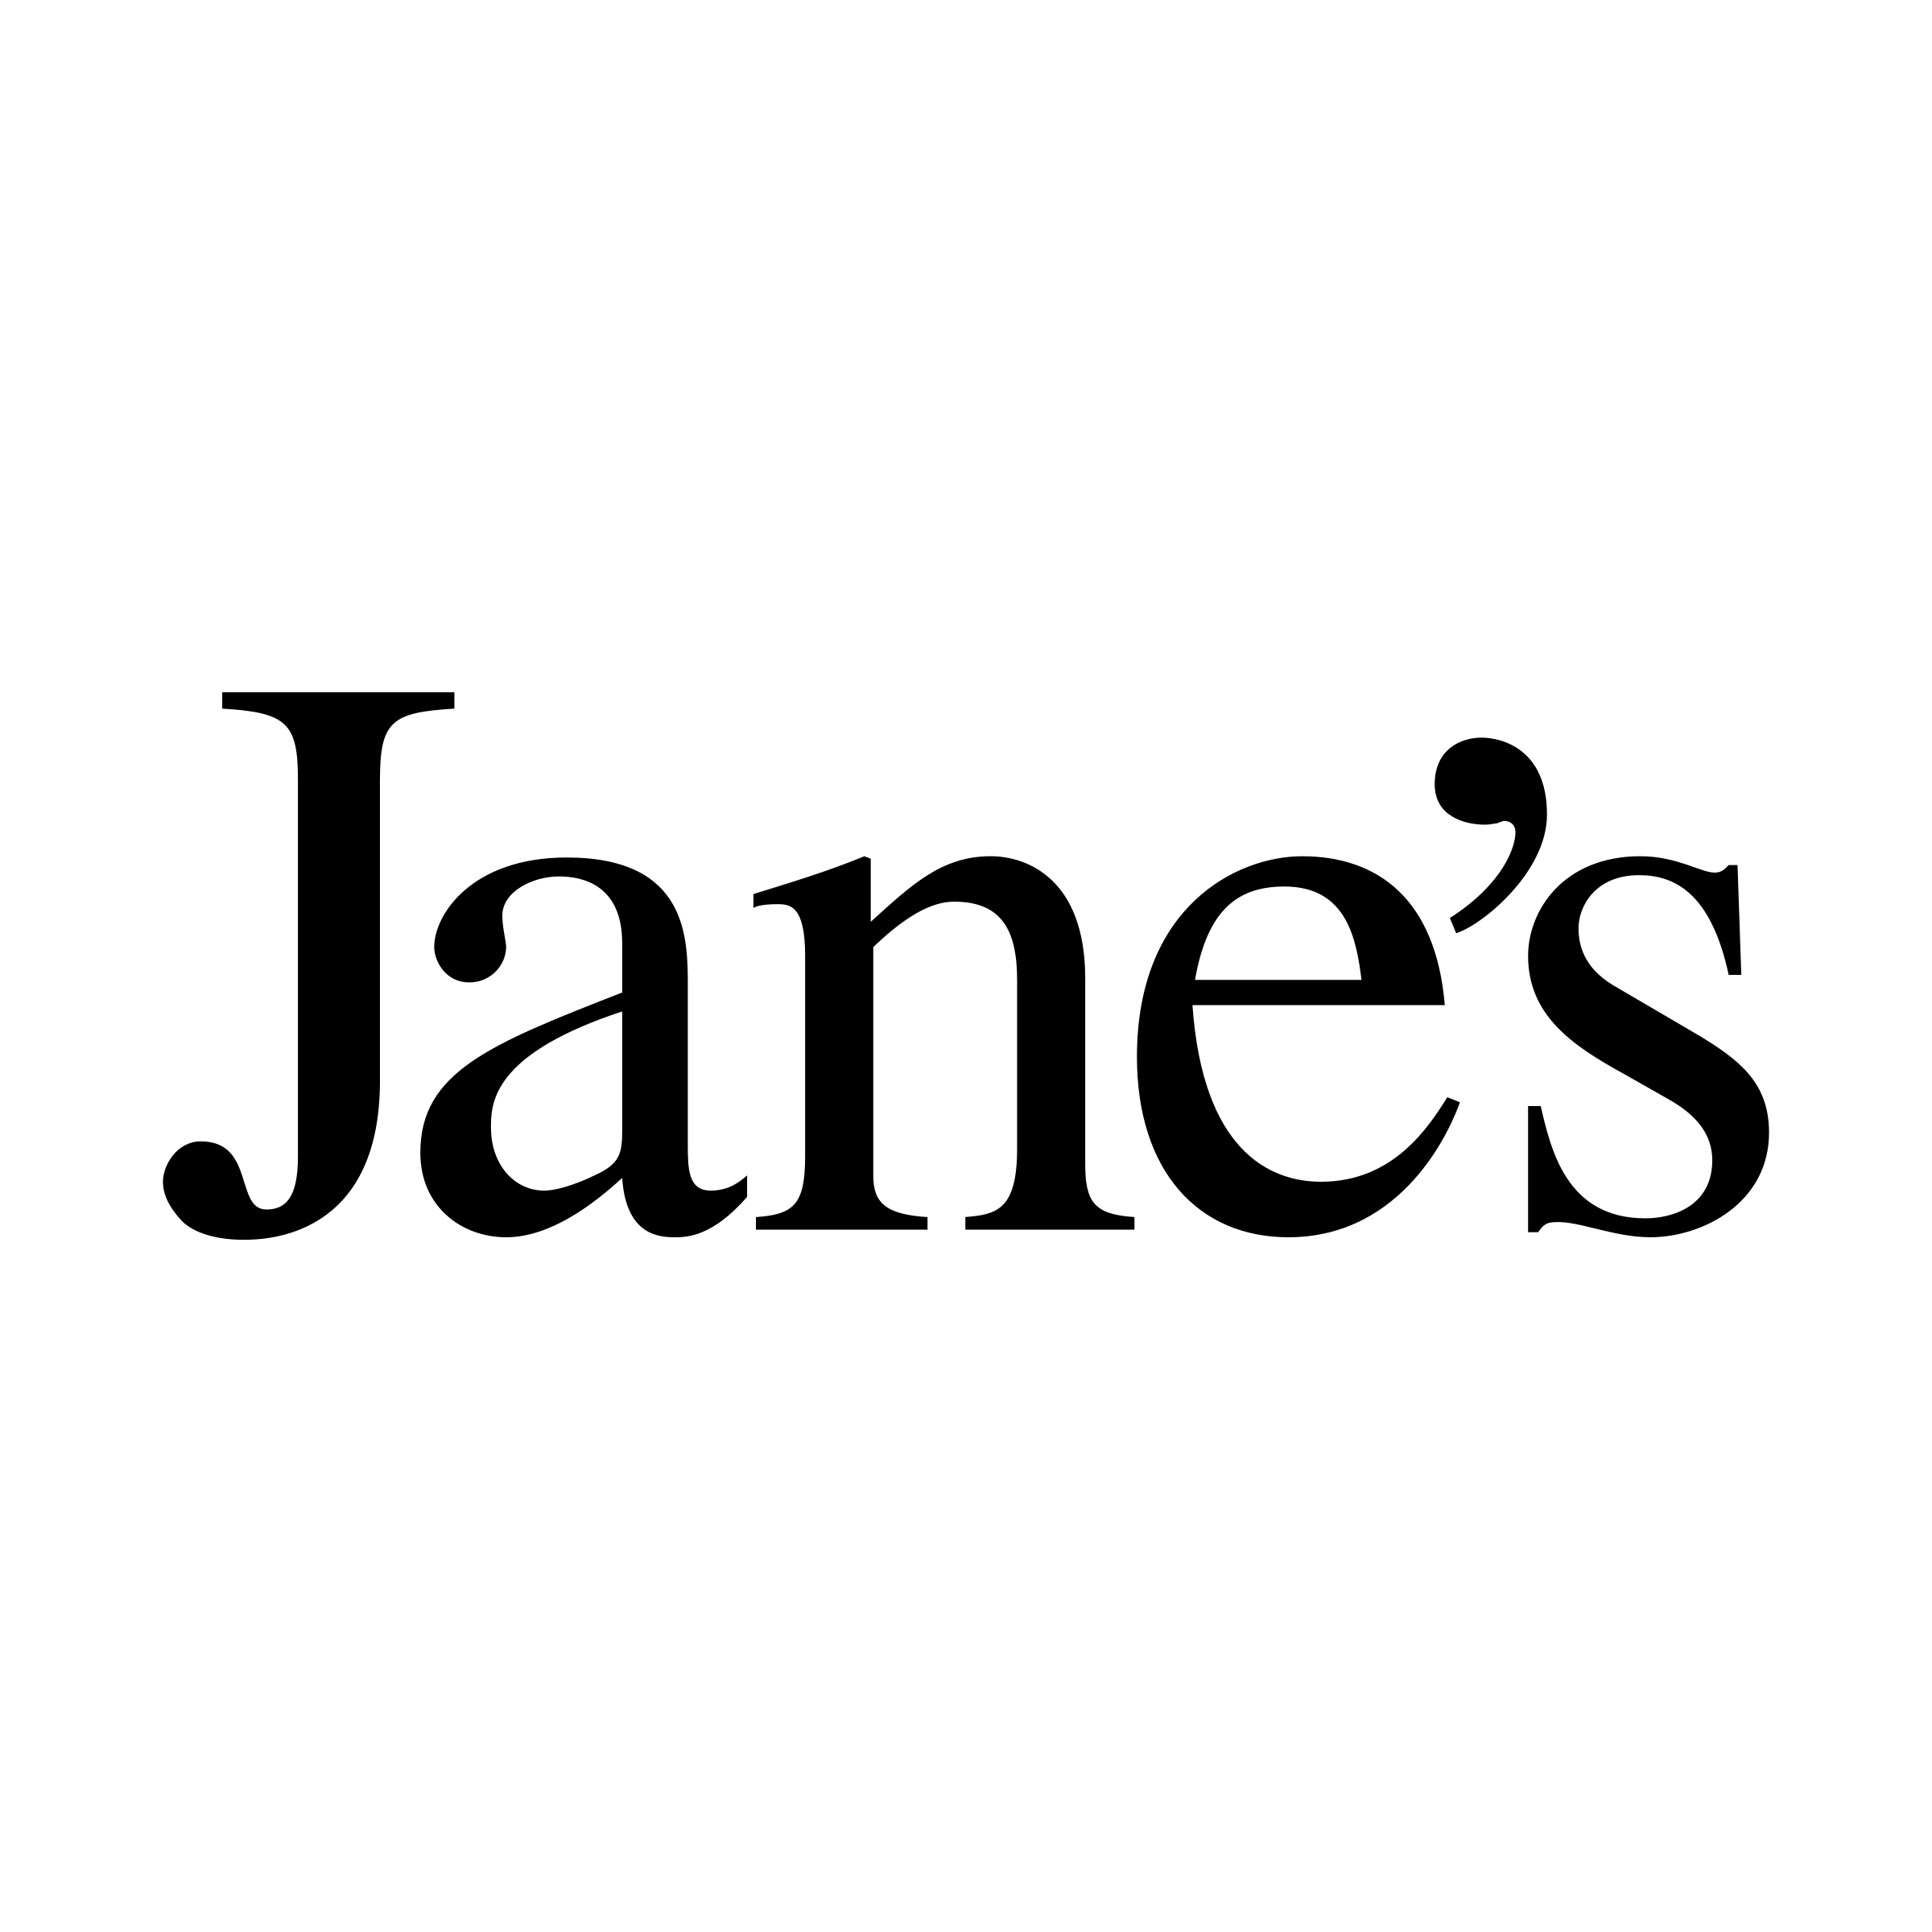 Jane Logo - Jane's Logo PNG Transparent & SVG Vector - Freebie Supply